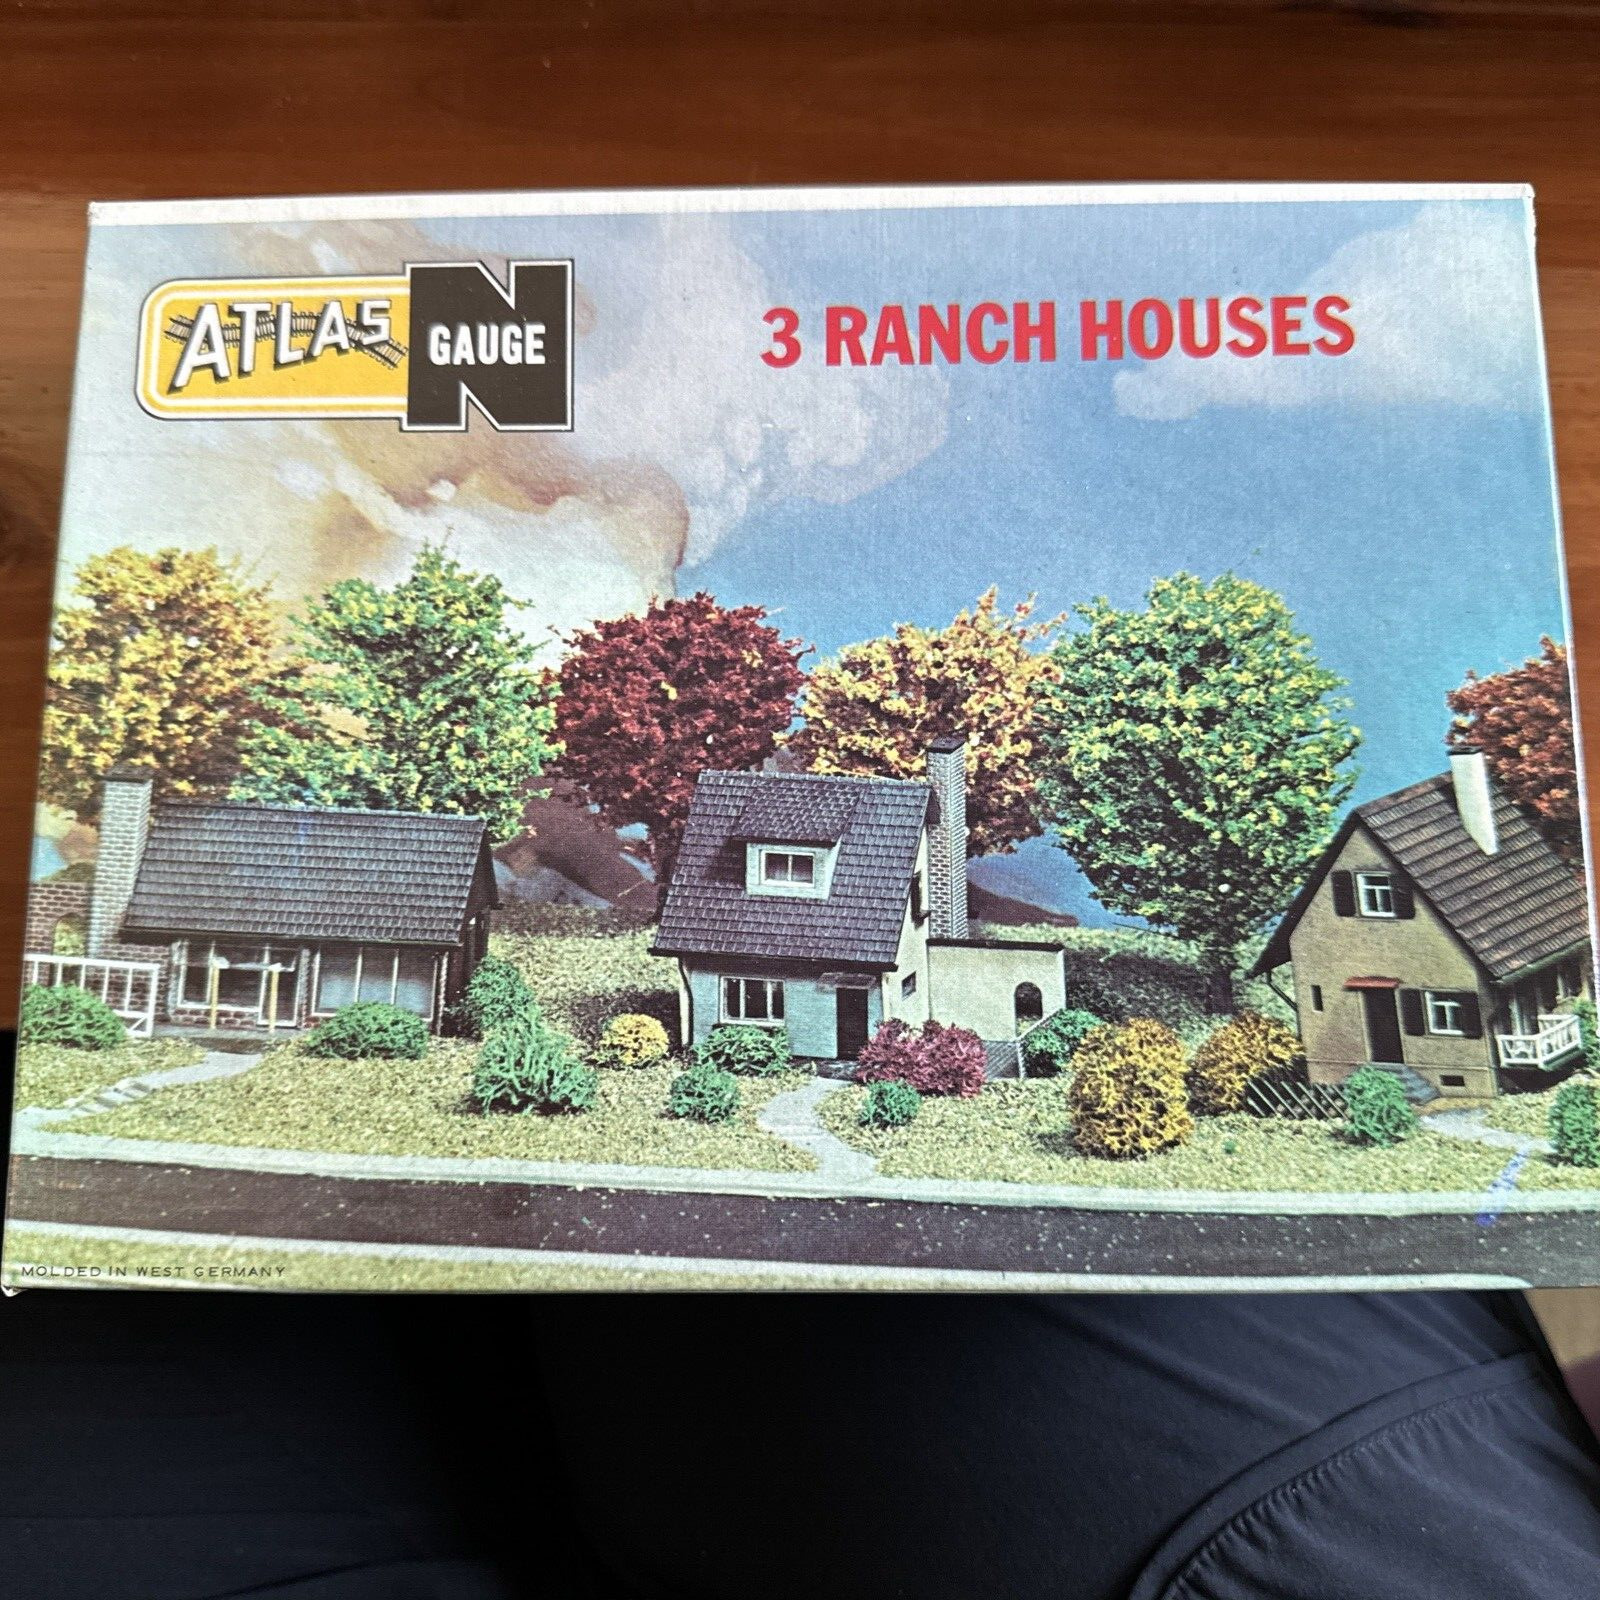 NIB Atlas N Gauge 3 Ranch Houses No. 2855-200 Made in W. Germany